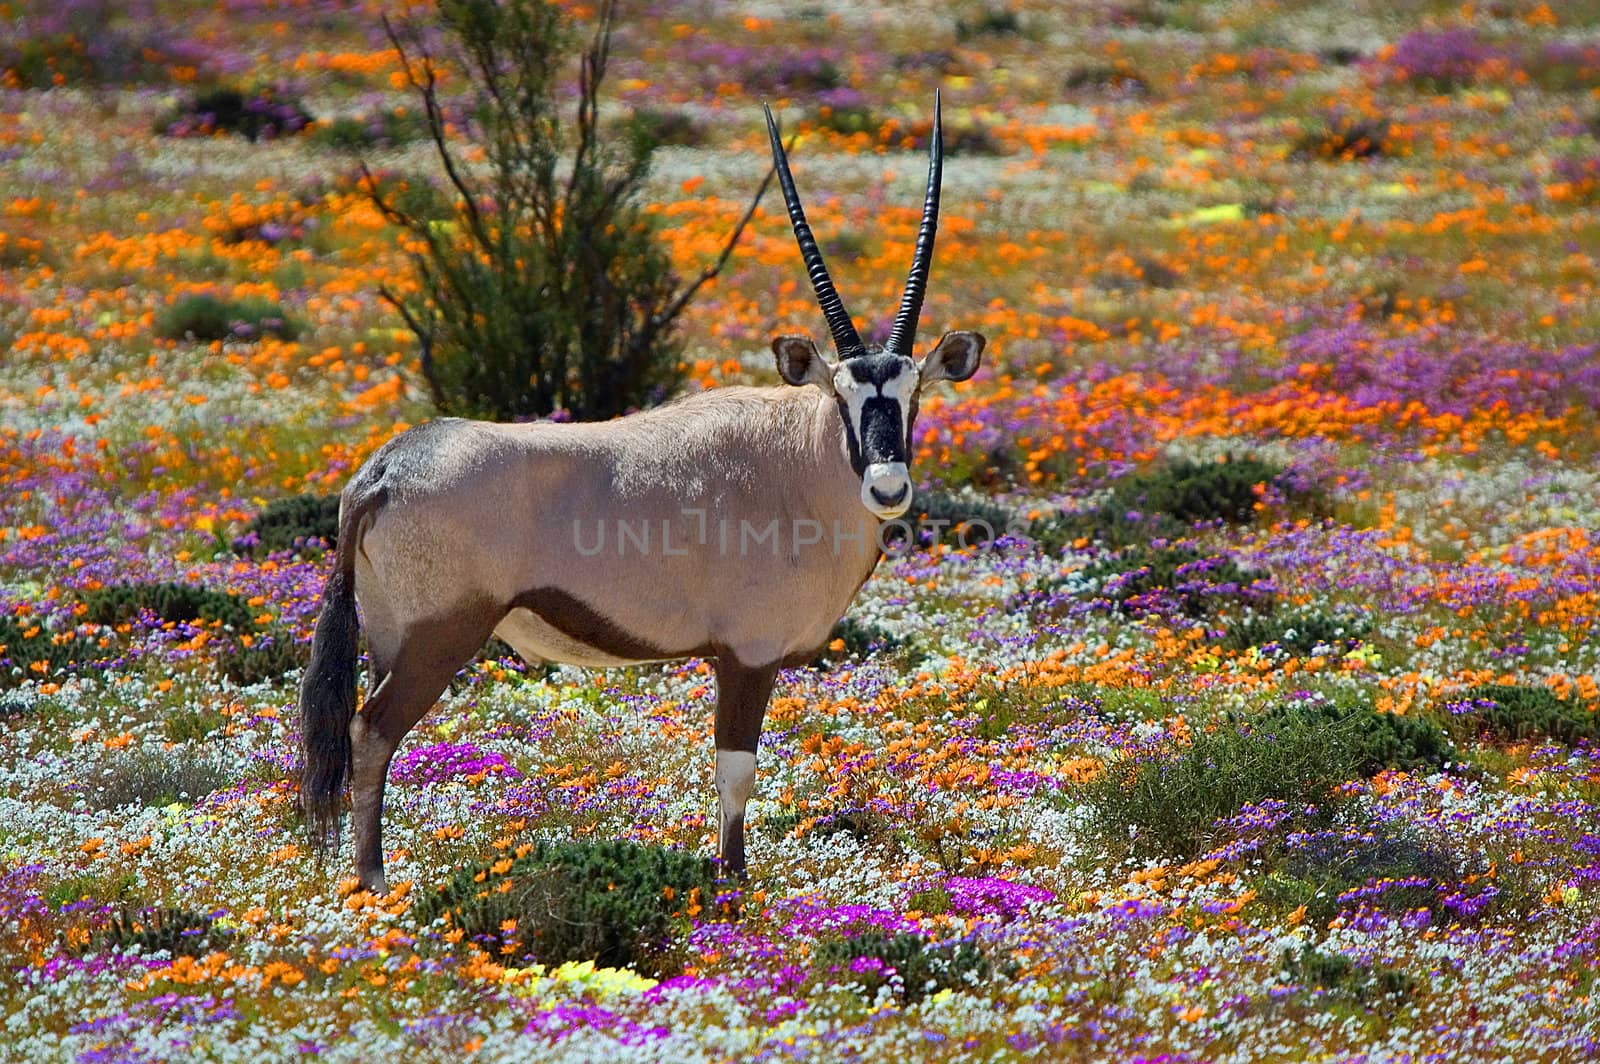 Oryx in flowers by dpreezg